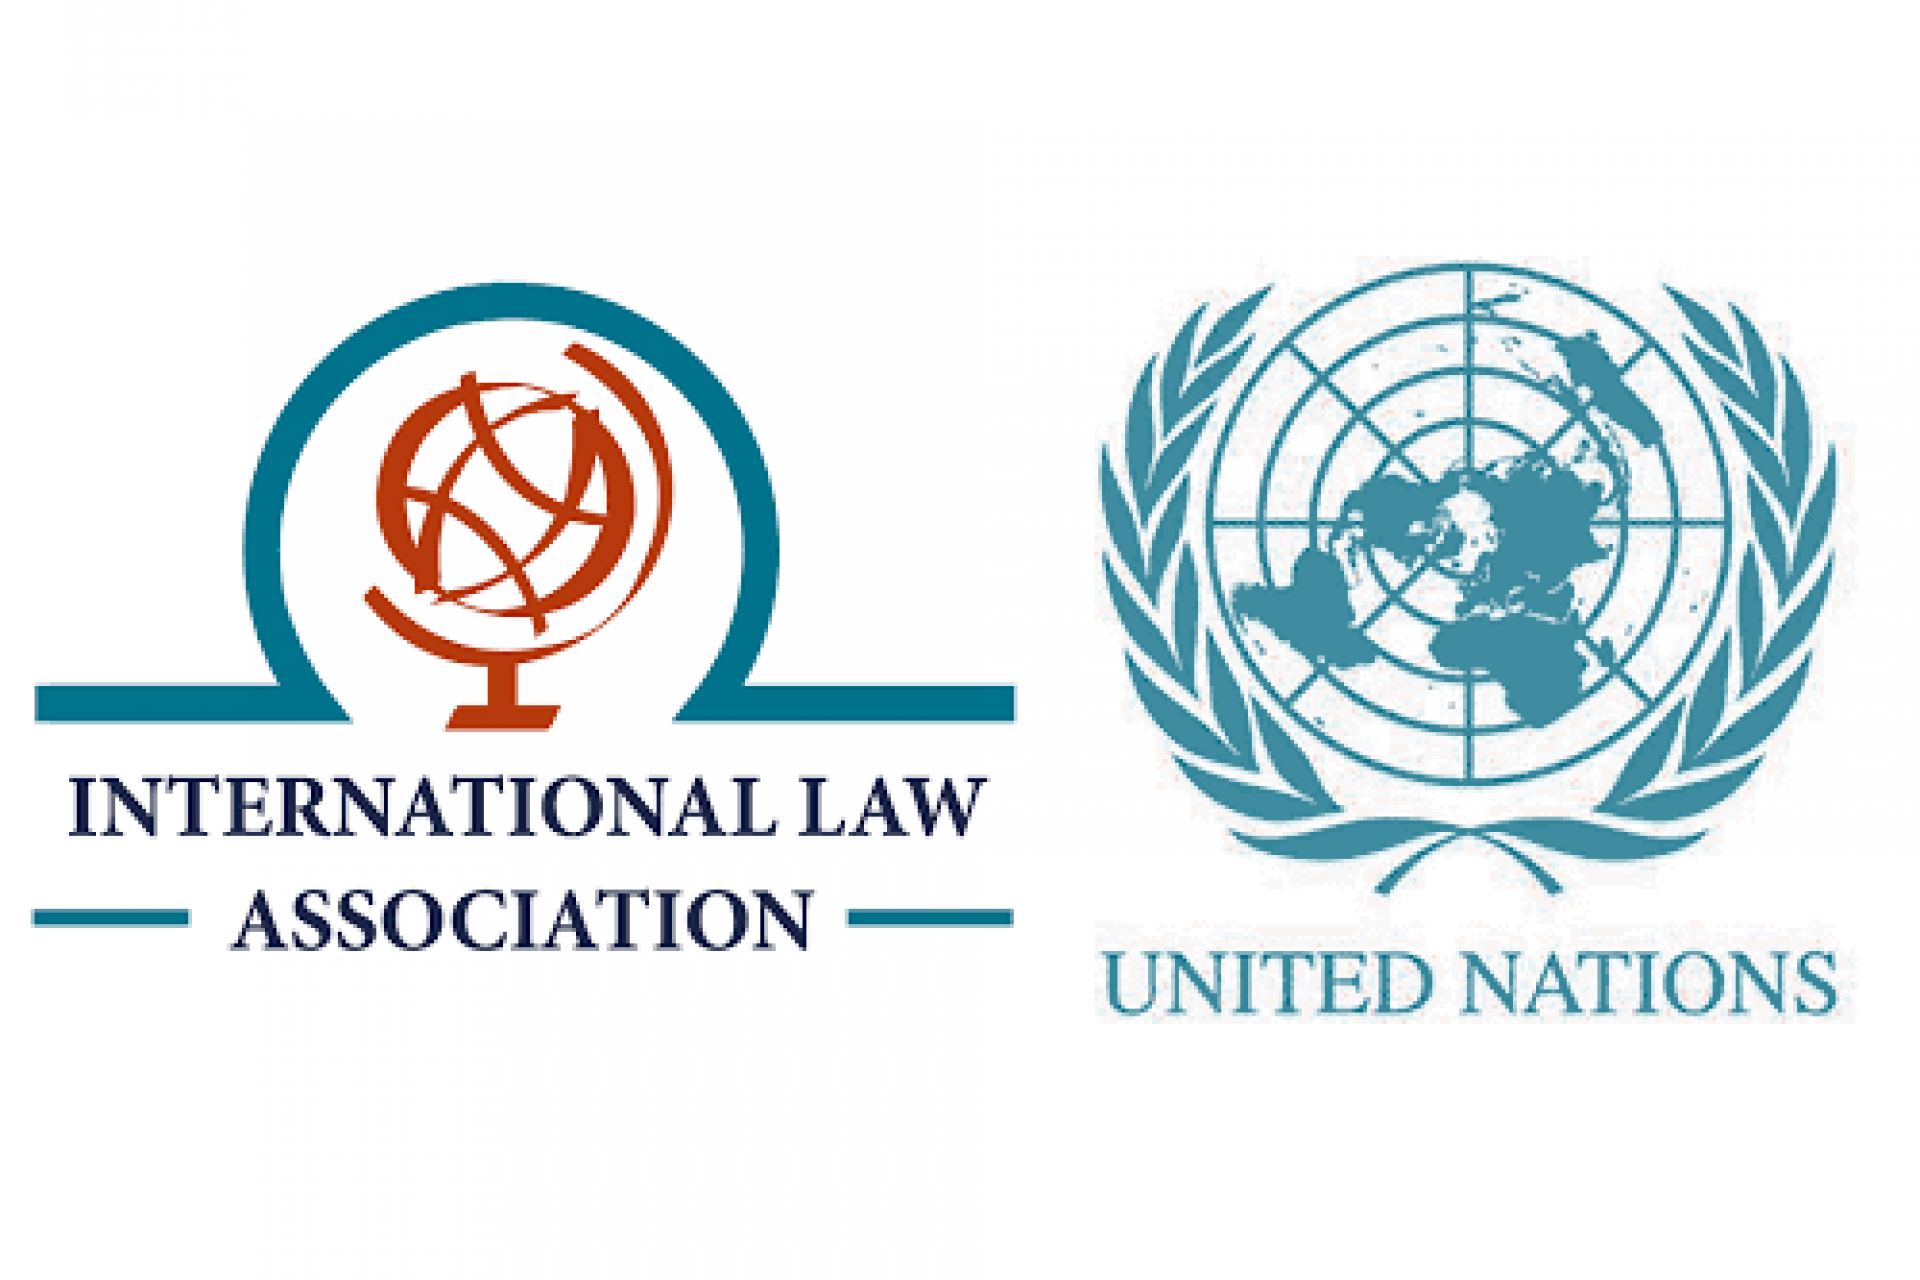 ILA logo and UN logo